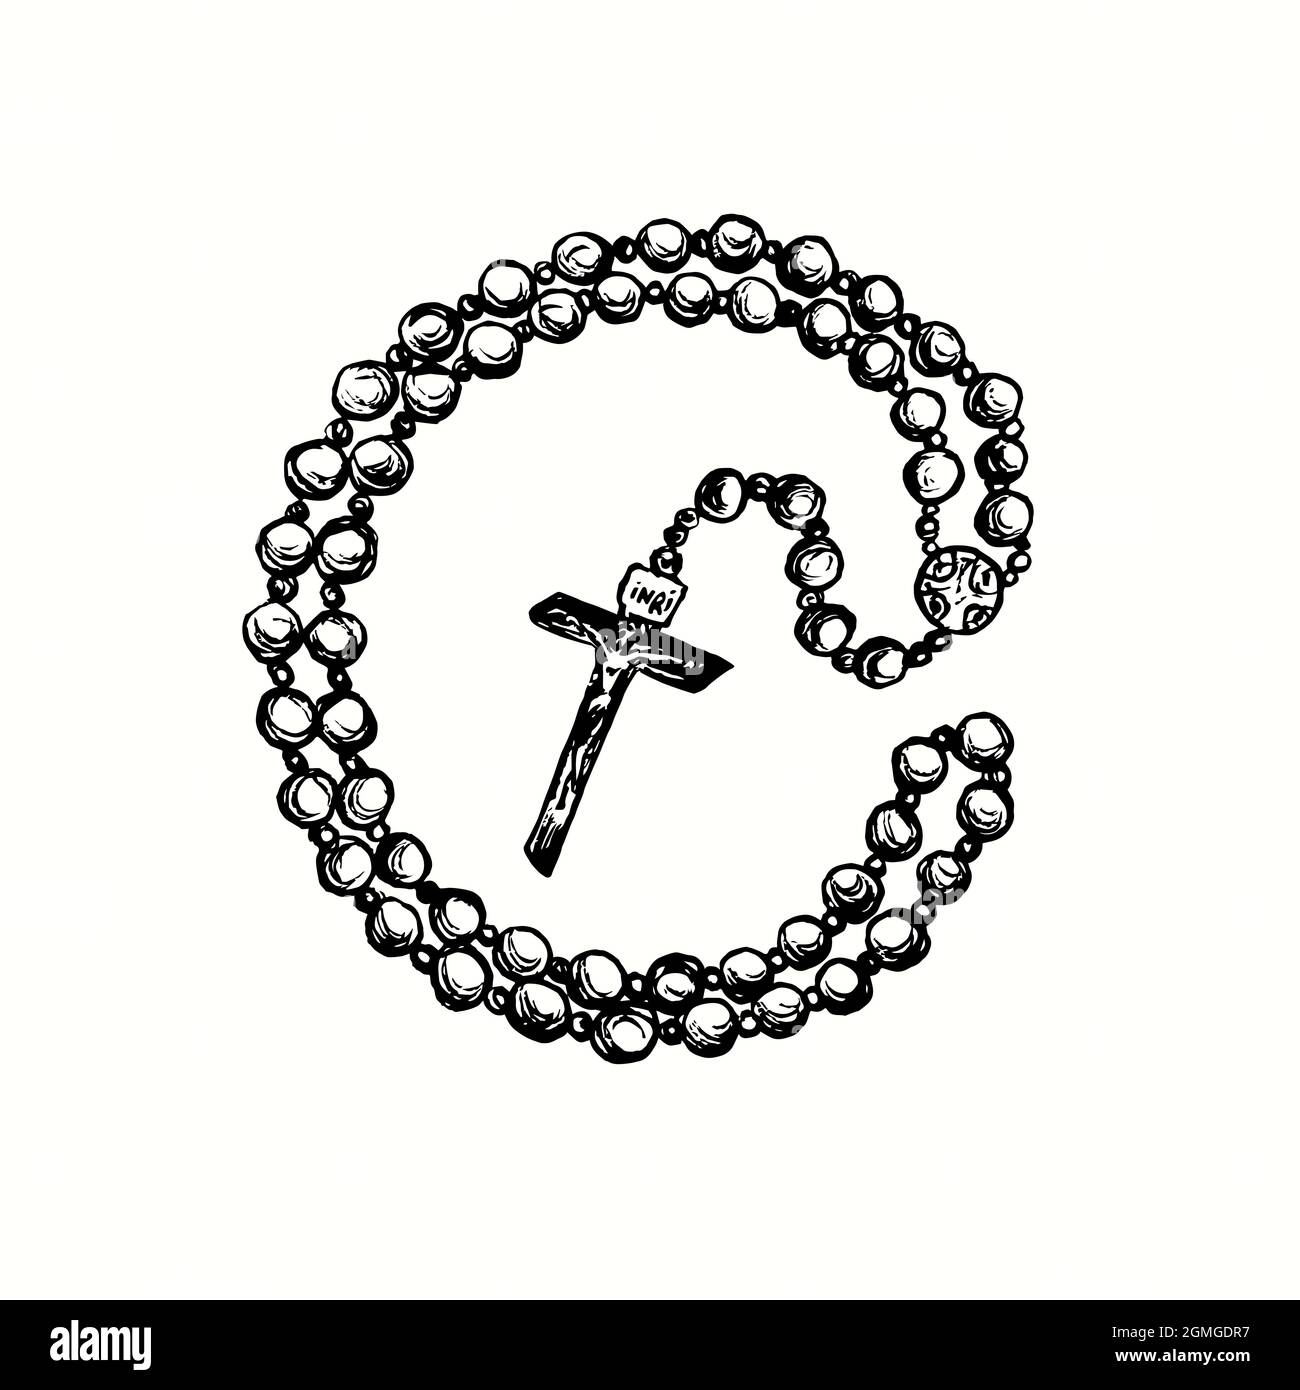 Perle di preghiera in stile vintage (perle di rosario cattolico romano). Immagine del disegno in bianco e nero con inchiostro Foto Stock